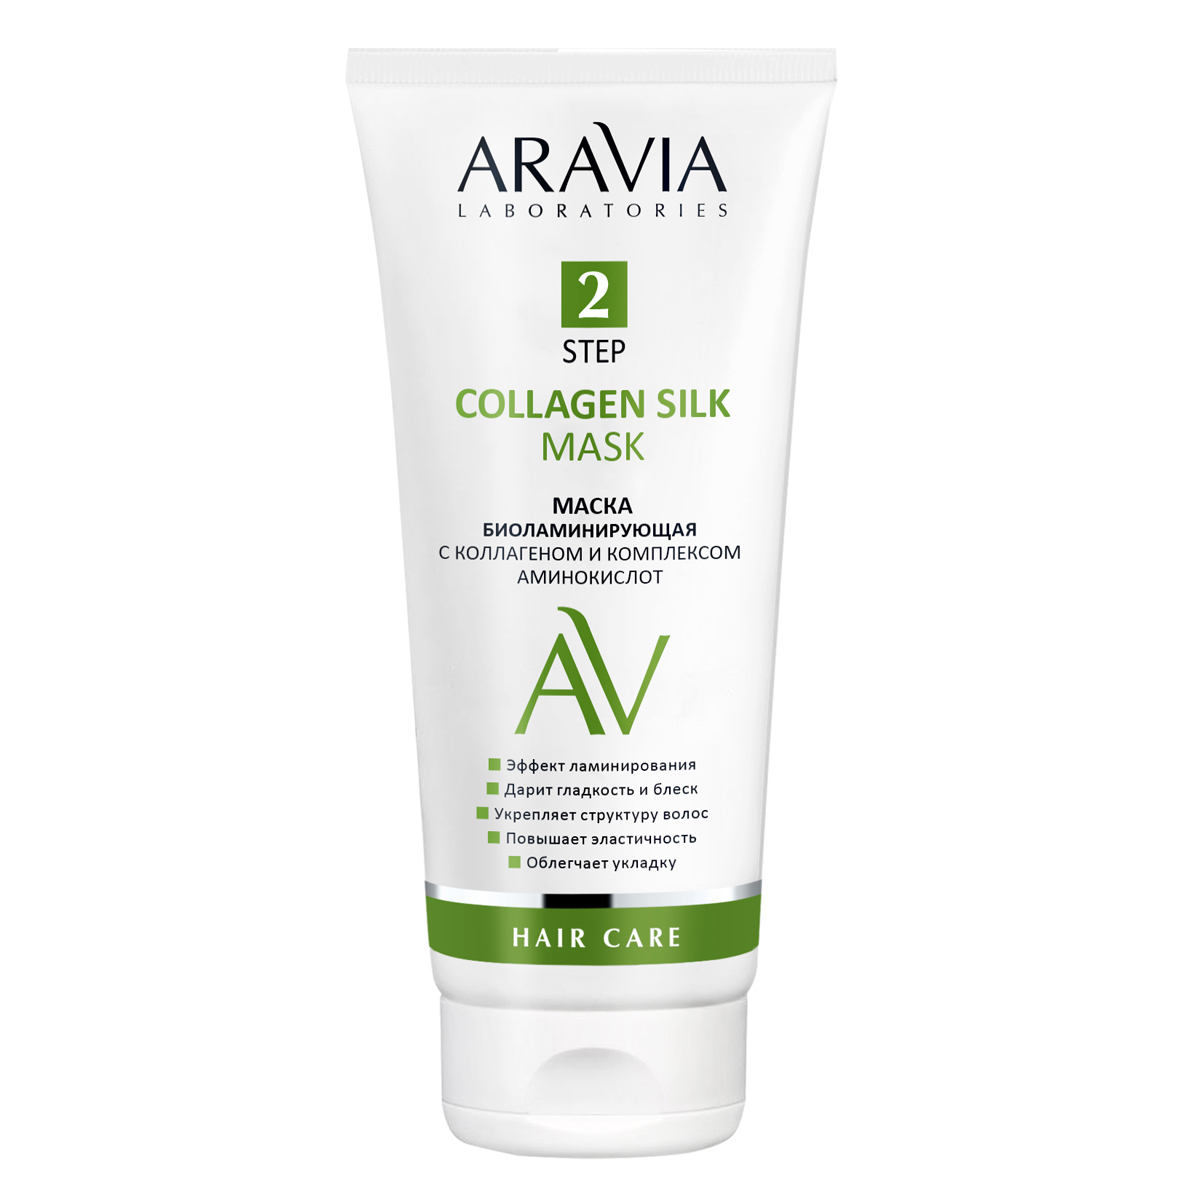 Aravia Laboratories Маска биоламинирующая с коллагеном и комплексом аминокислот Collagen Silk Mask, 200 мл (Aravia Laboratories, Уход за волосами) цена и фото